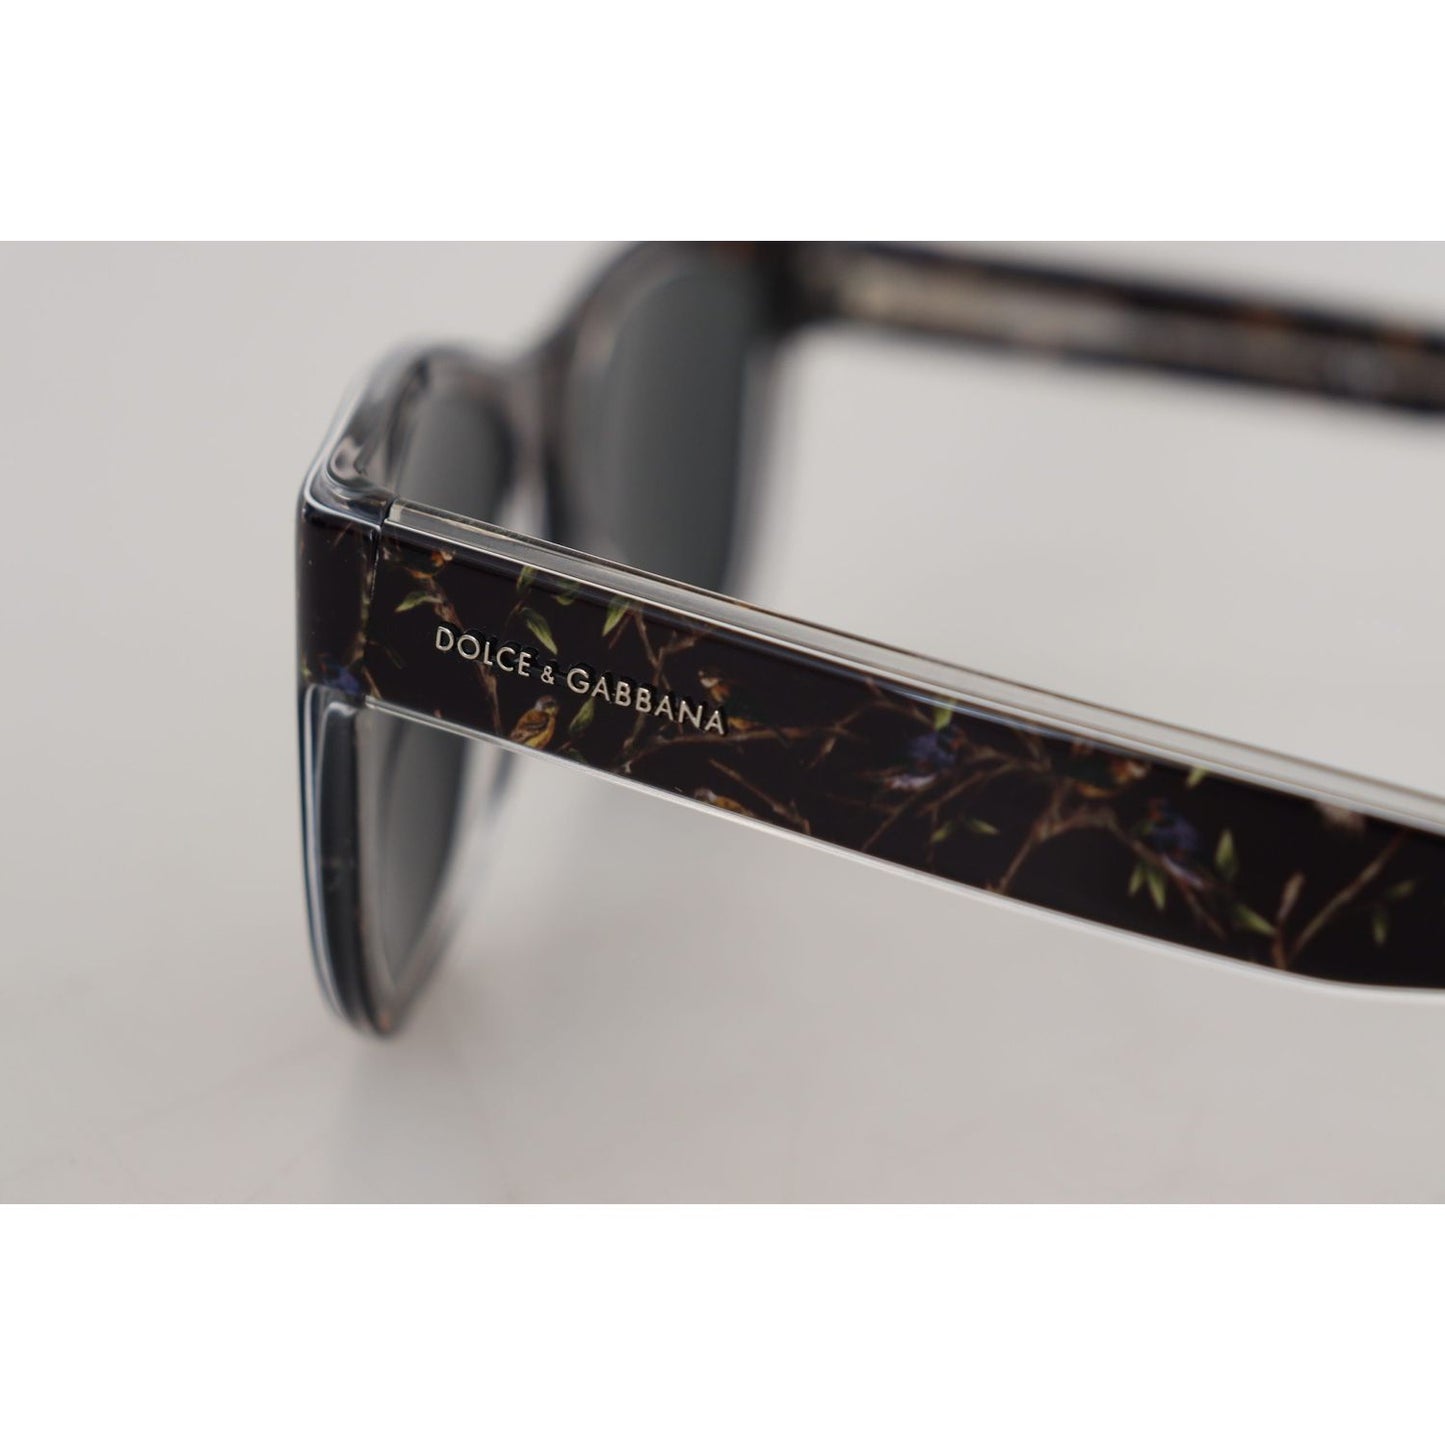 Dolce & Gabbana Elegant Black Acetate Sunglasses for Women black-bird-square-full-rim-acetate-dg4284-sunglasses